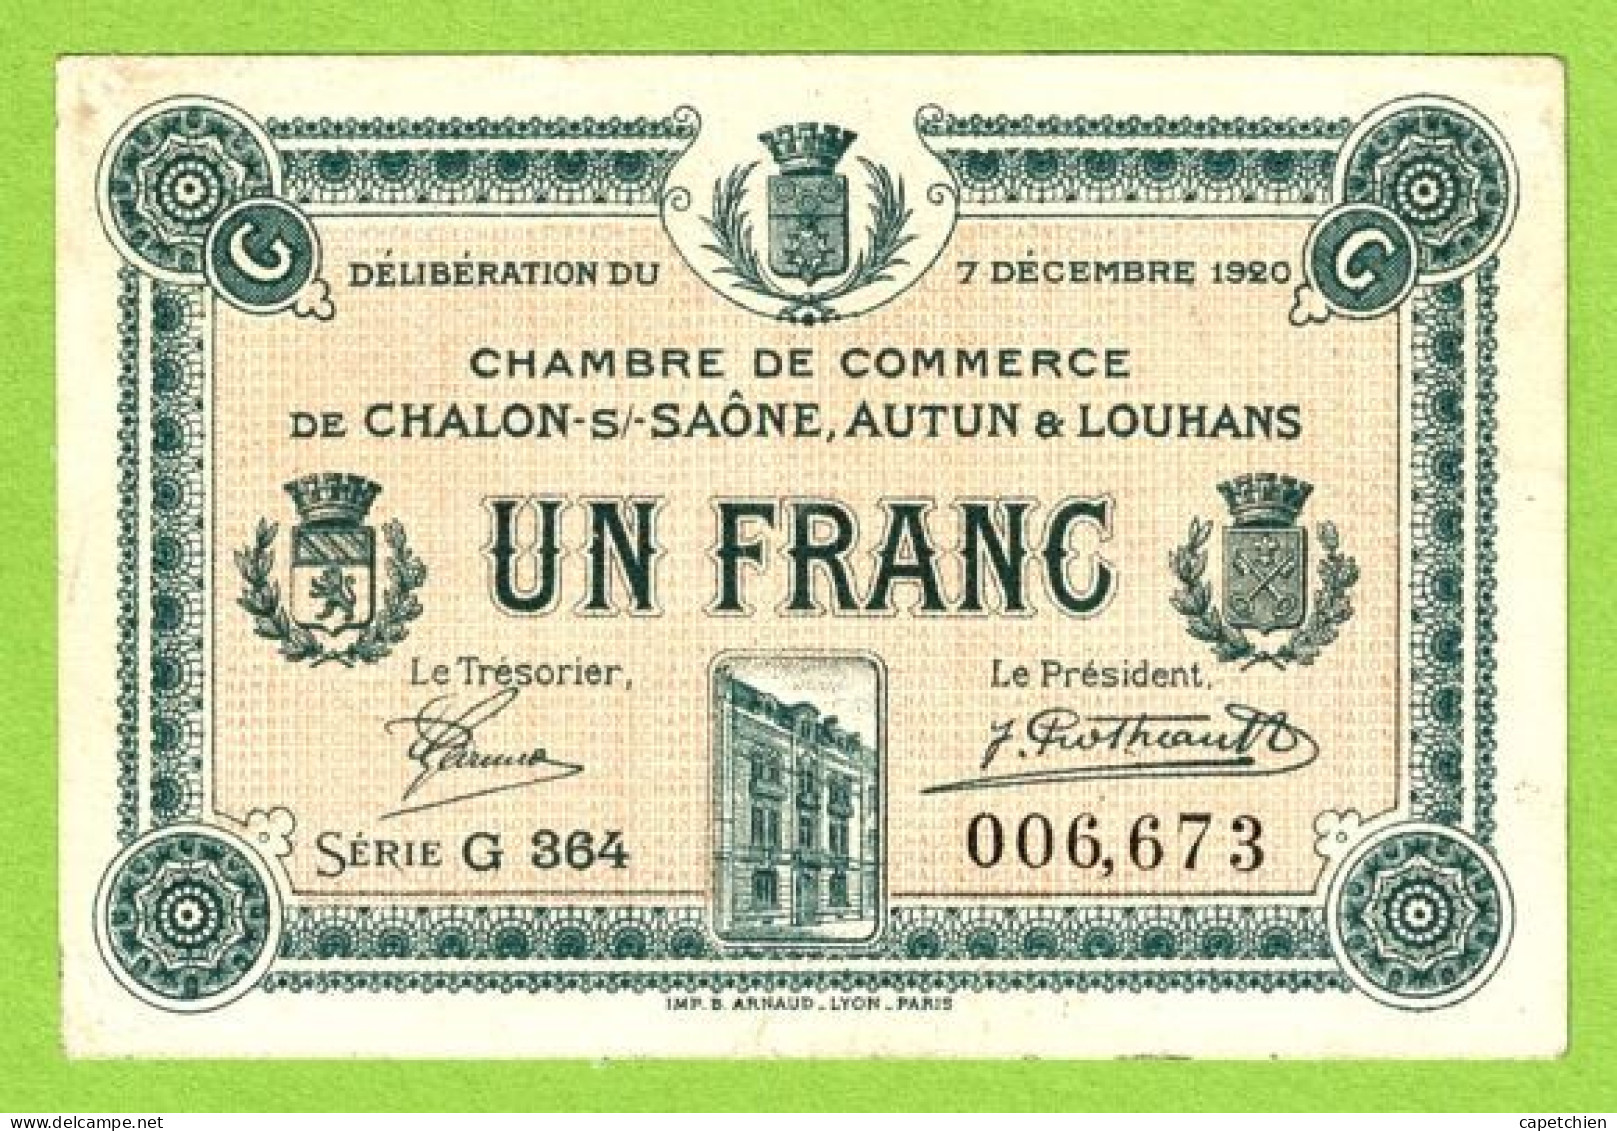 FRANCE / CHAMBRE De COMMERCE / CHALON SUE SAÔNE/ AUTUN / LOUHANS 1 FRANC / 7 DECEMBRE 1920 / 006673 / SERIE G 364 - Chambre De Commerce